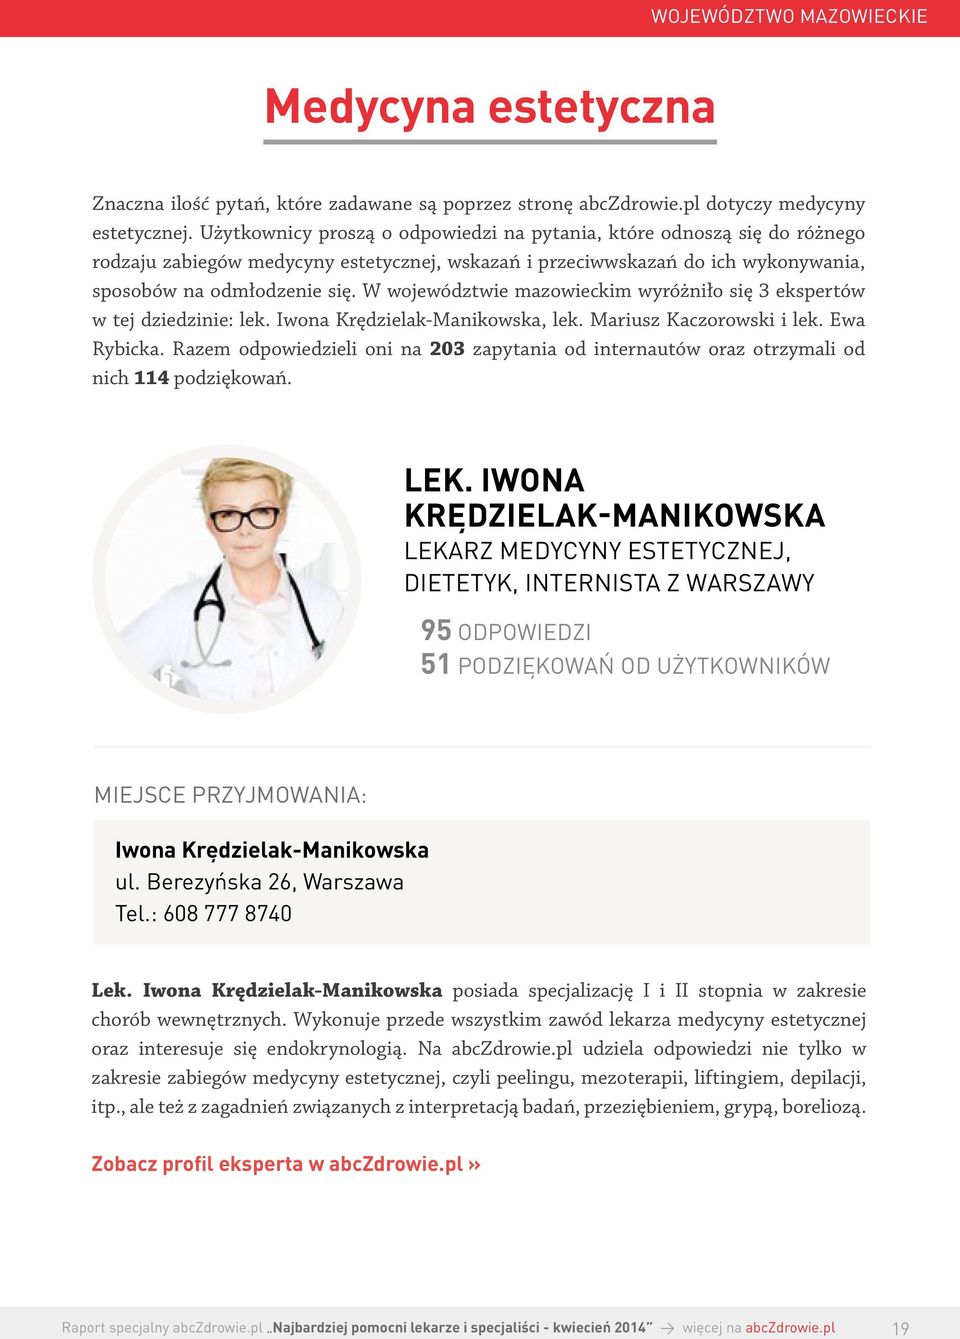 W województwie mazowieckim wyróżniło się 3 ekspertów w tej dziedzinie: lek. Iwona Krędzielak-Manikowska, lek. Mariusz Kaczorowski i lek. Ewa Rybicka.